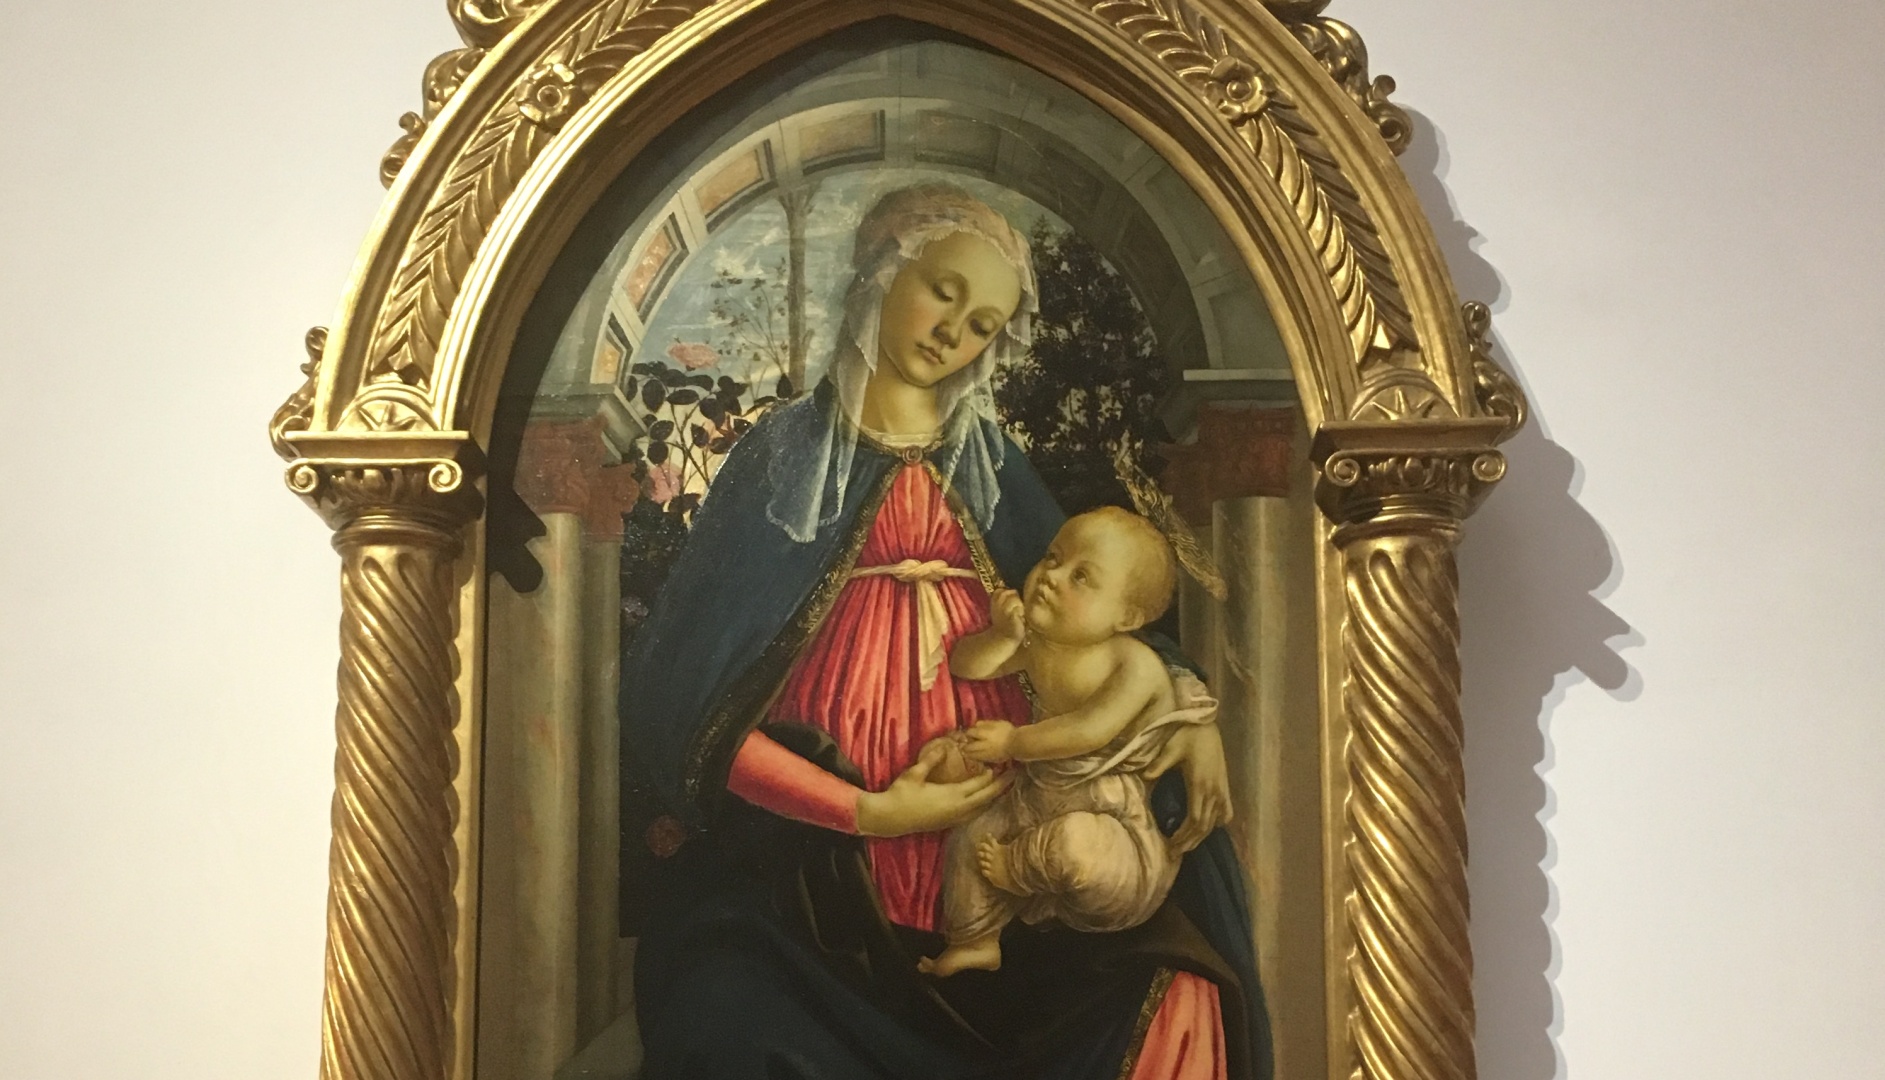 Botticello - Madonna of the Rose Garden - c 1470